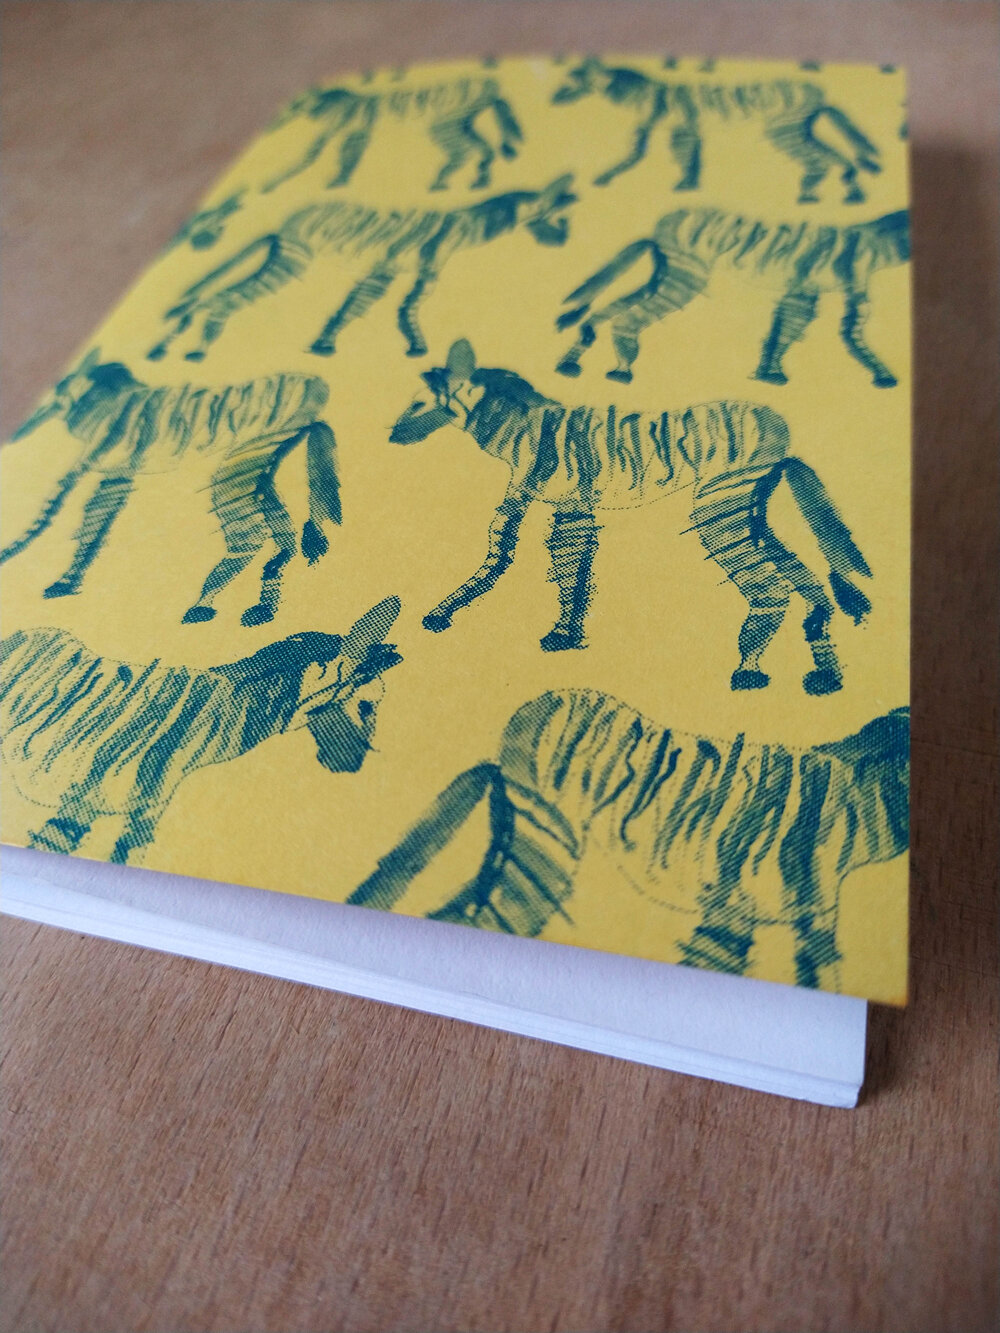 Riso Printed A6 Notebook, Zebra Design by Daryn